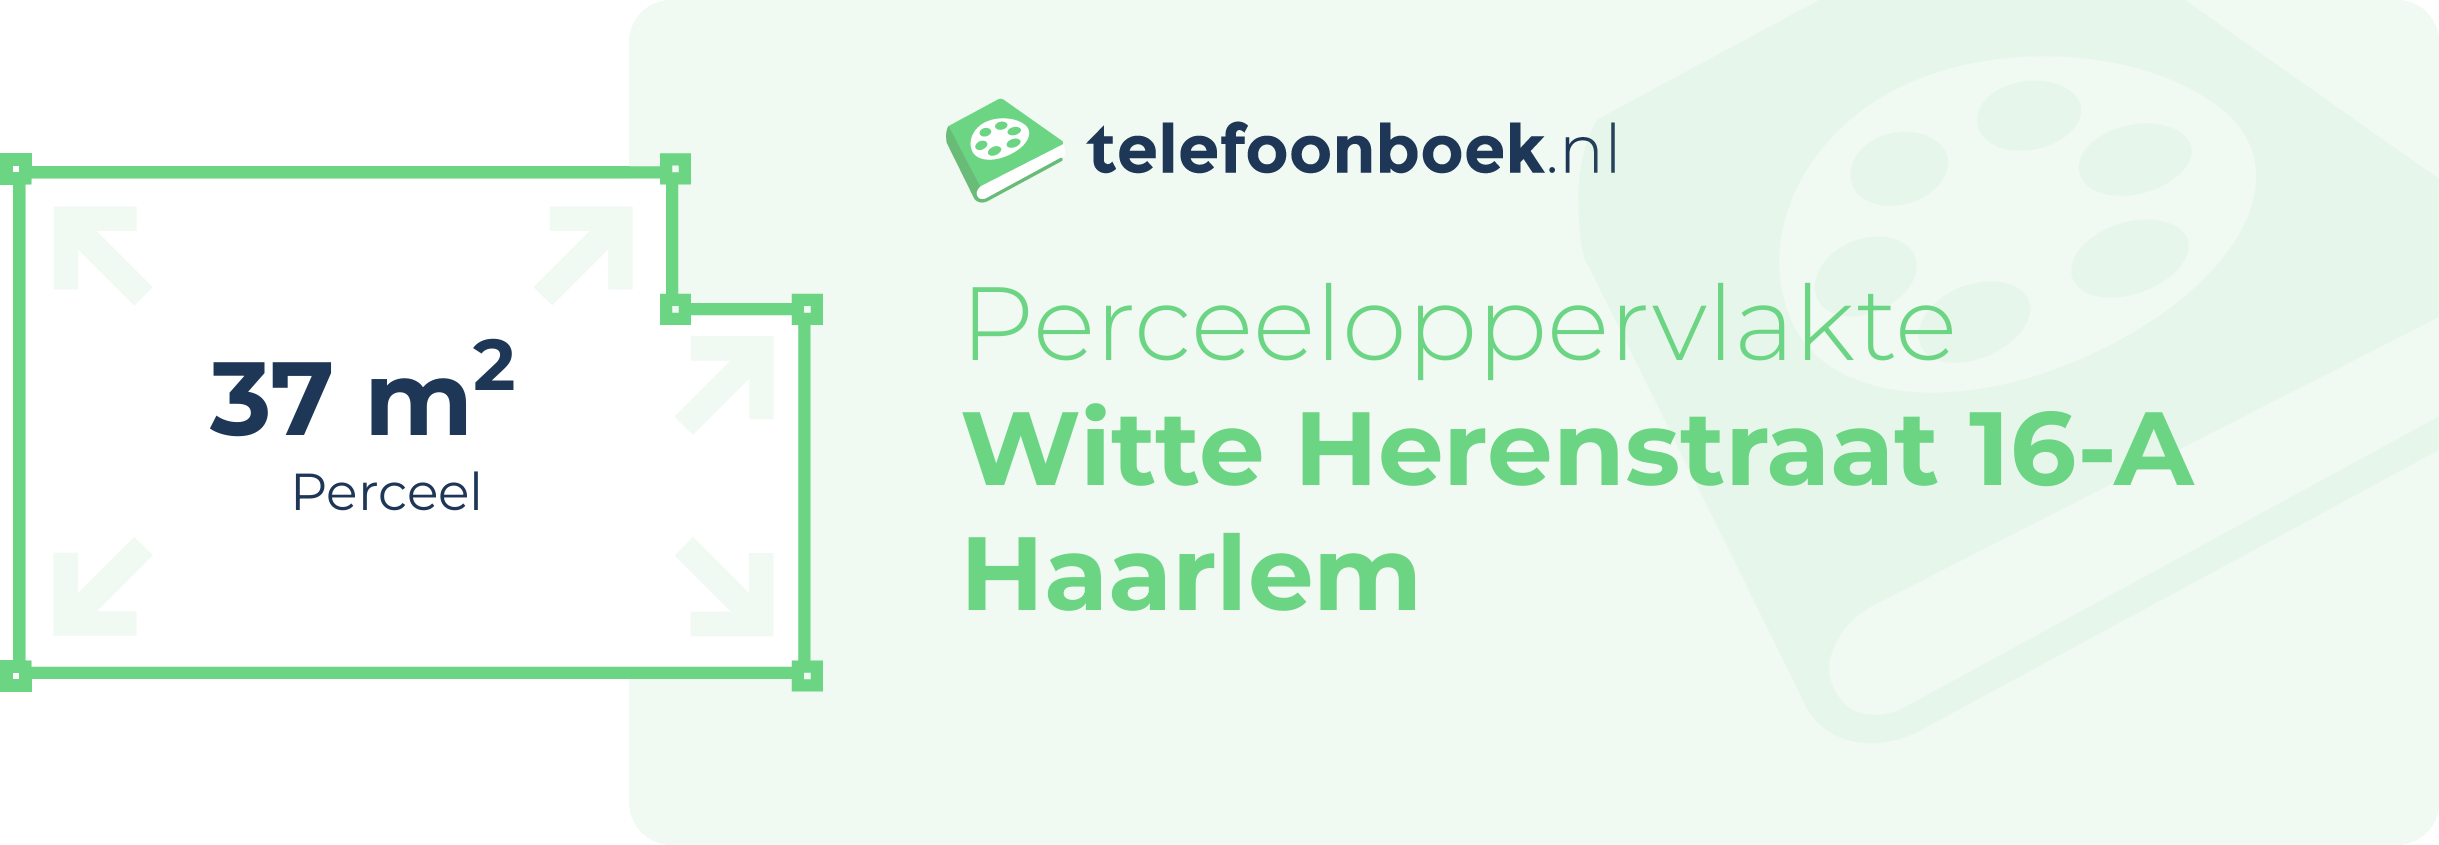 Perceeloppervlakte Witte Herenstraat 16-A Haarlem